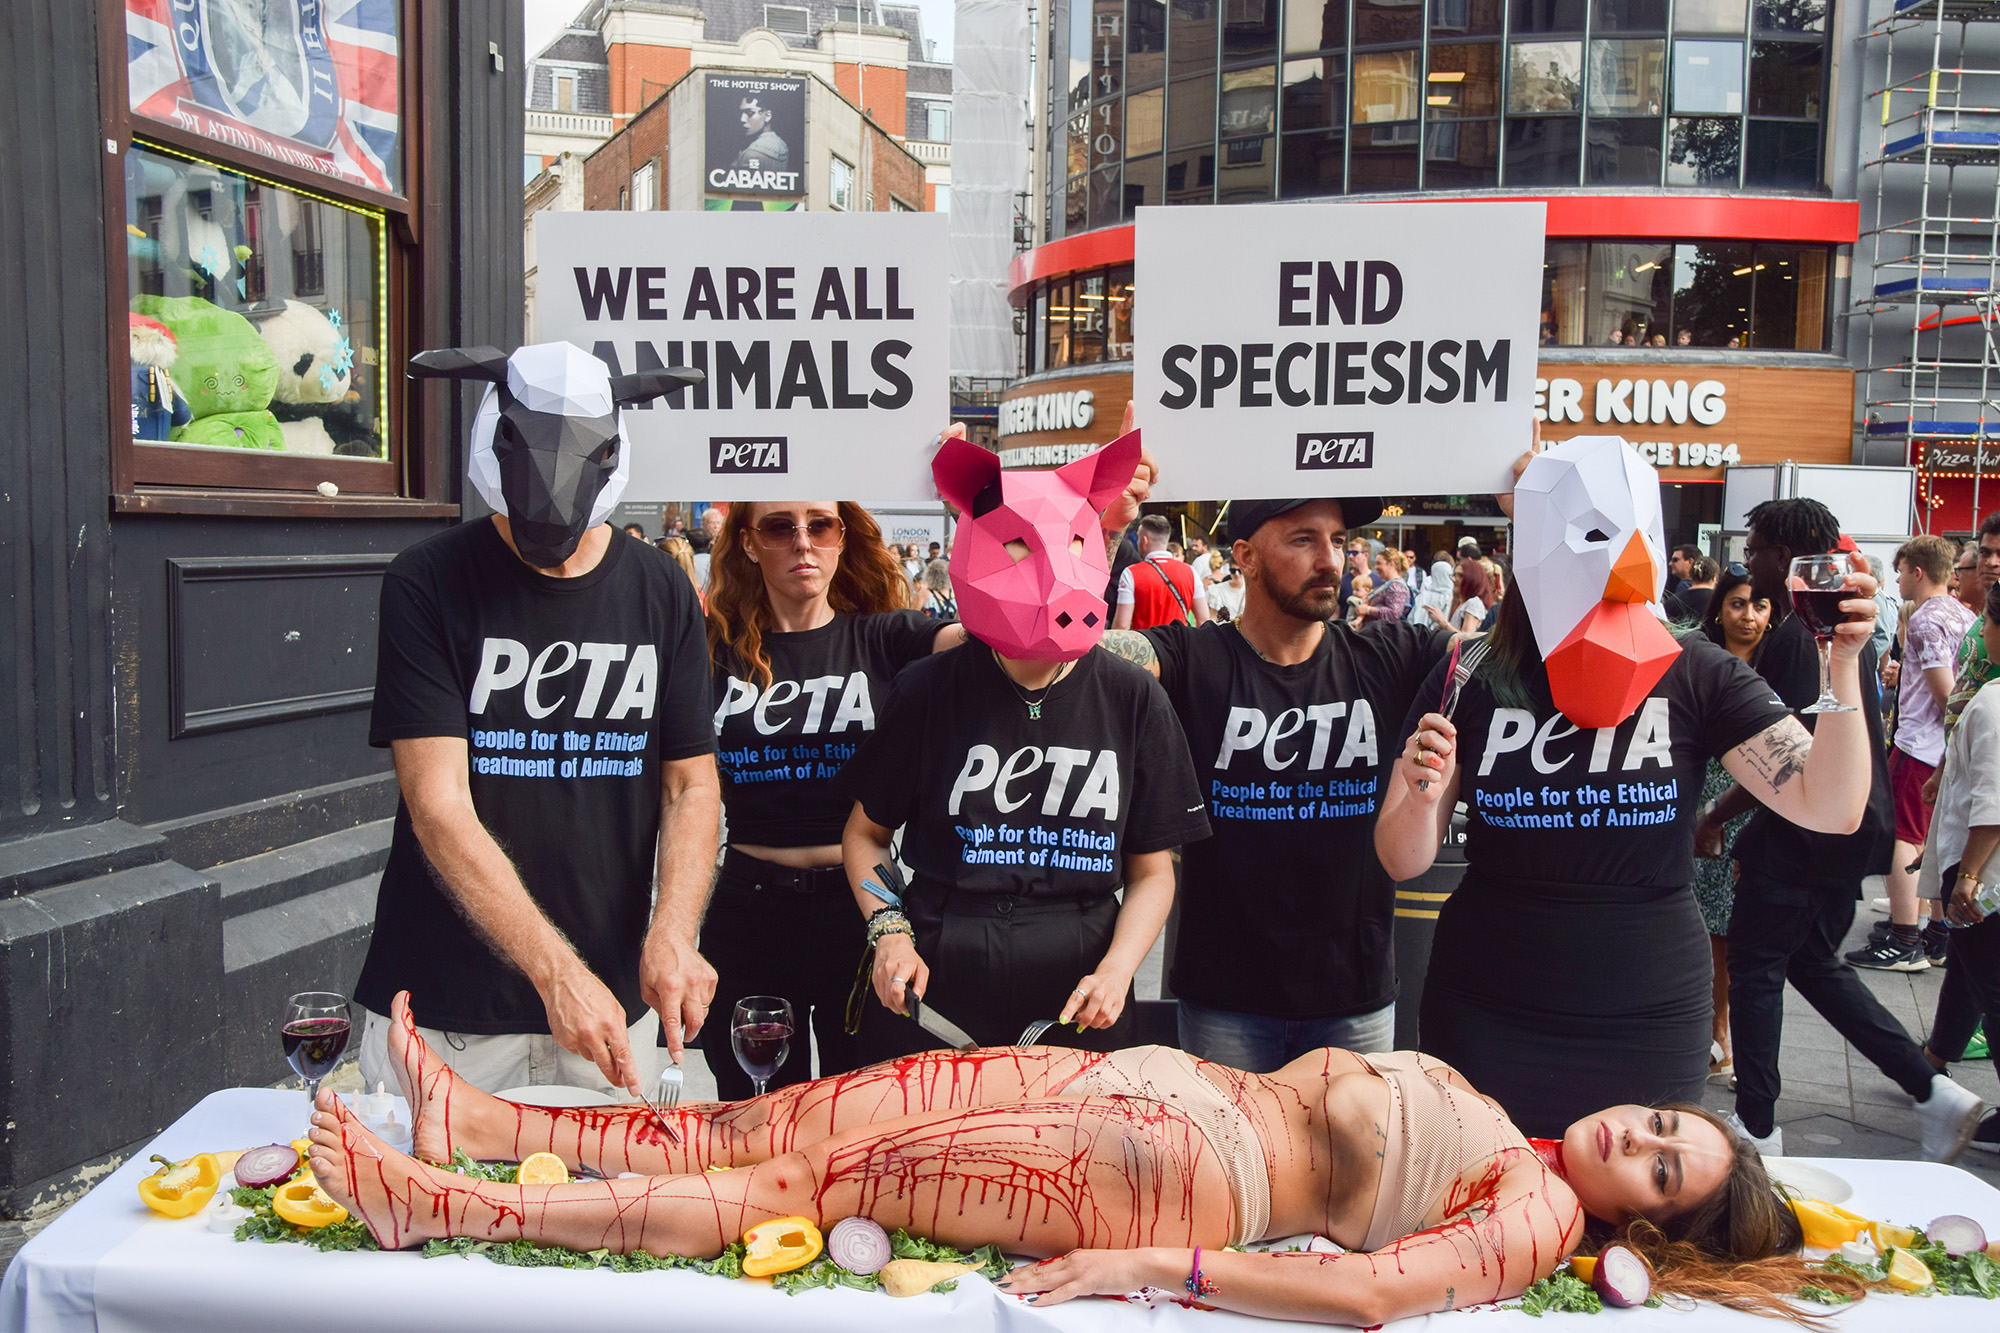 PETA-aktivisták tiltakoznak Londonban a fajok megkülönbözetése ellen. Fotó: Vuk Valcic/SOPA Images/LightRocket via Getty Images